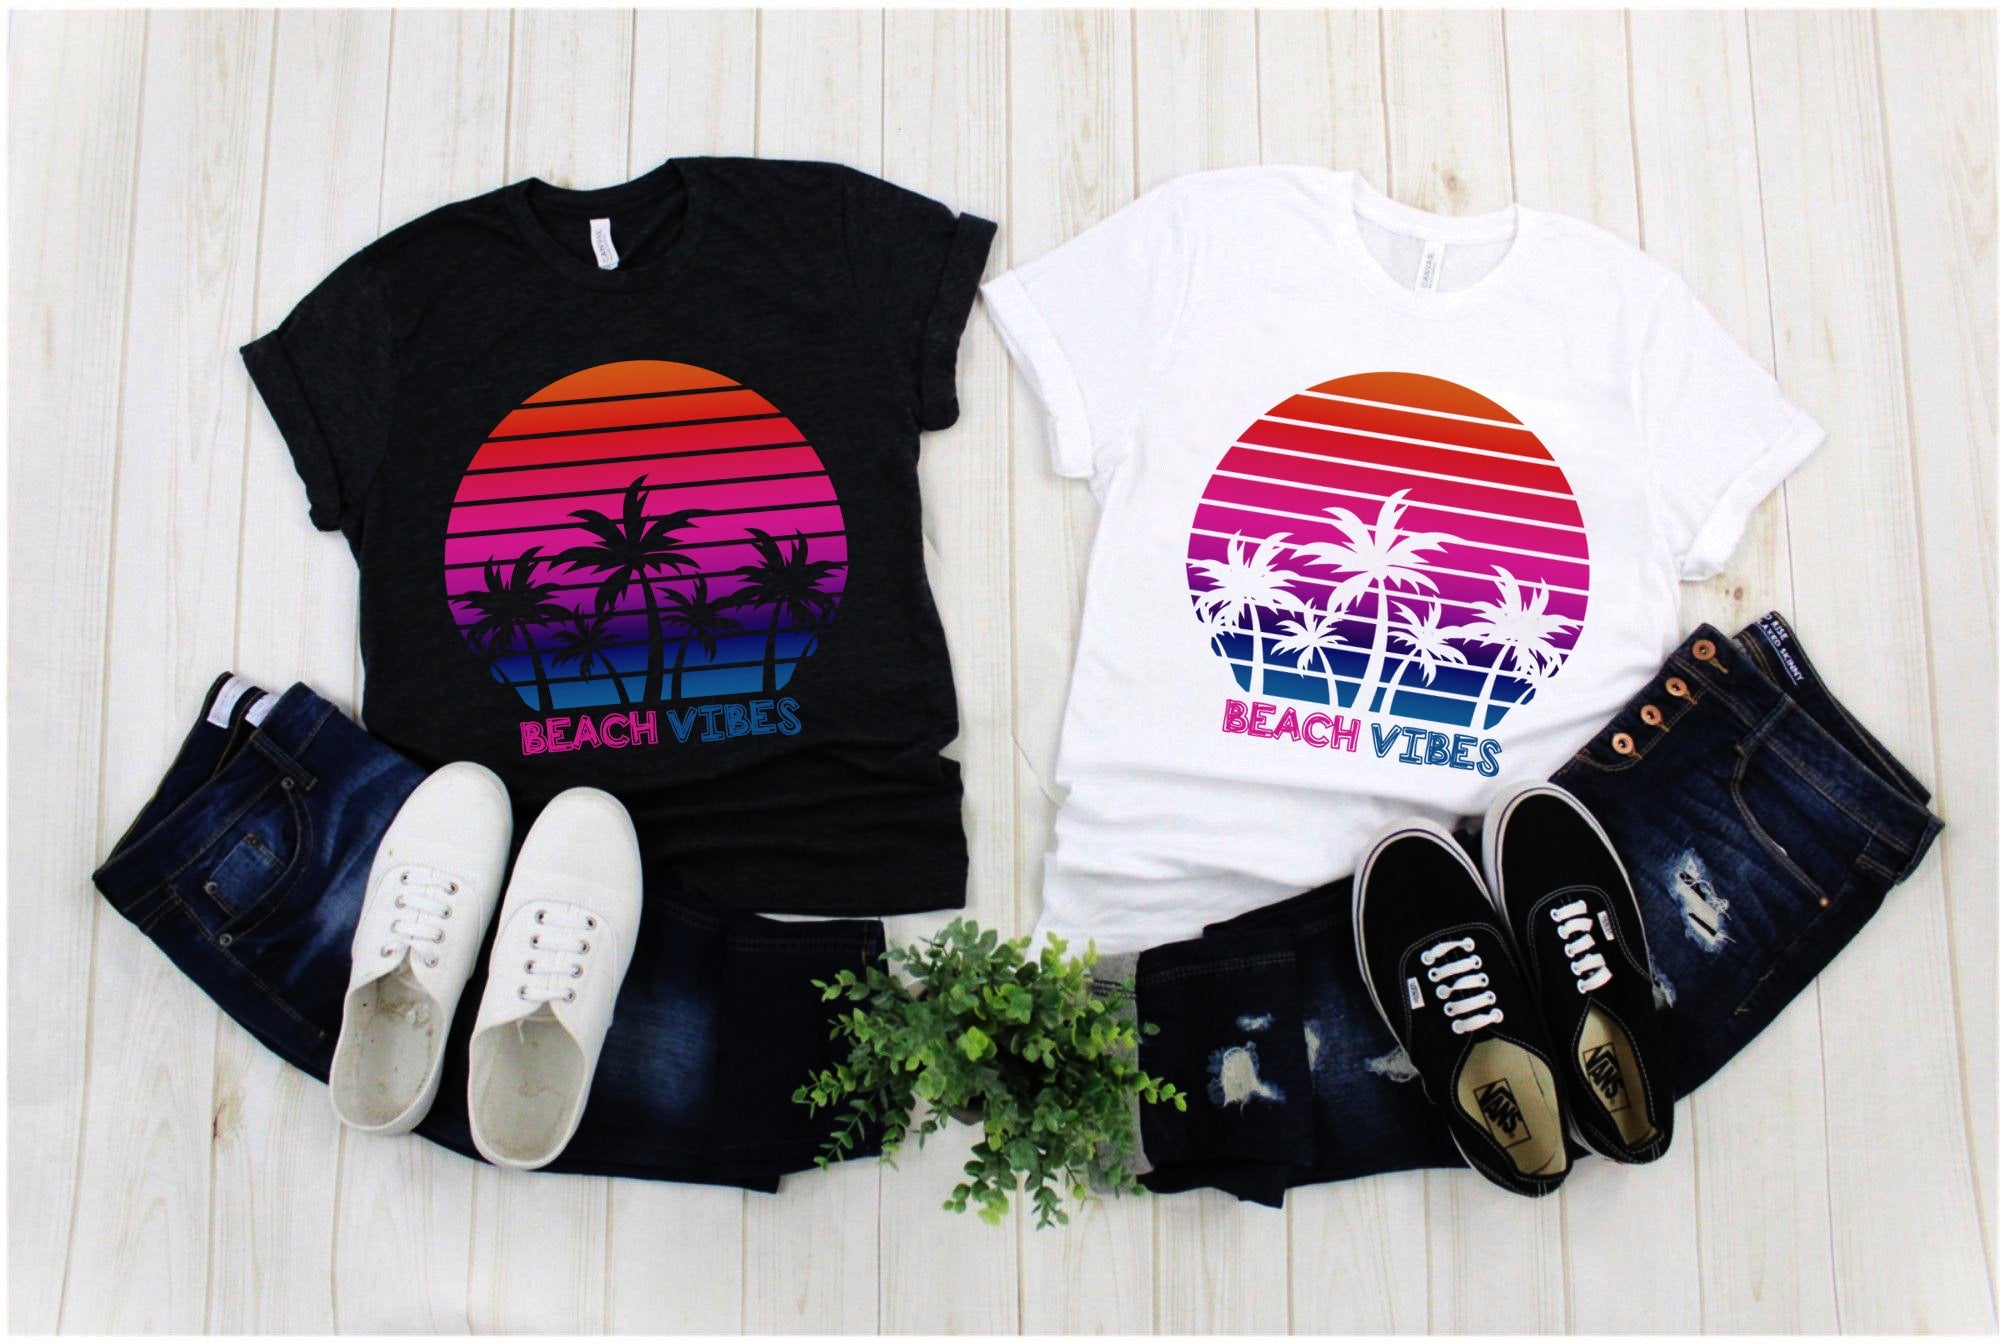 Plážové vibrácie | Palm Tress | Retro tričká Sunset, Tričko Island Life | Letná košeľa | Dovolenková košeľa, dobrodružná jar, darček na jarné prázdniny - plusminusco.com